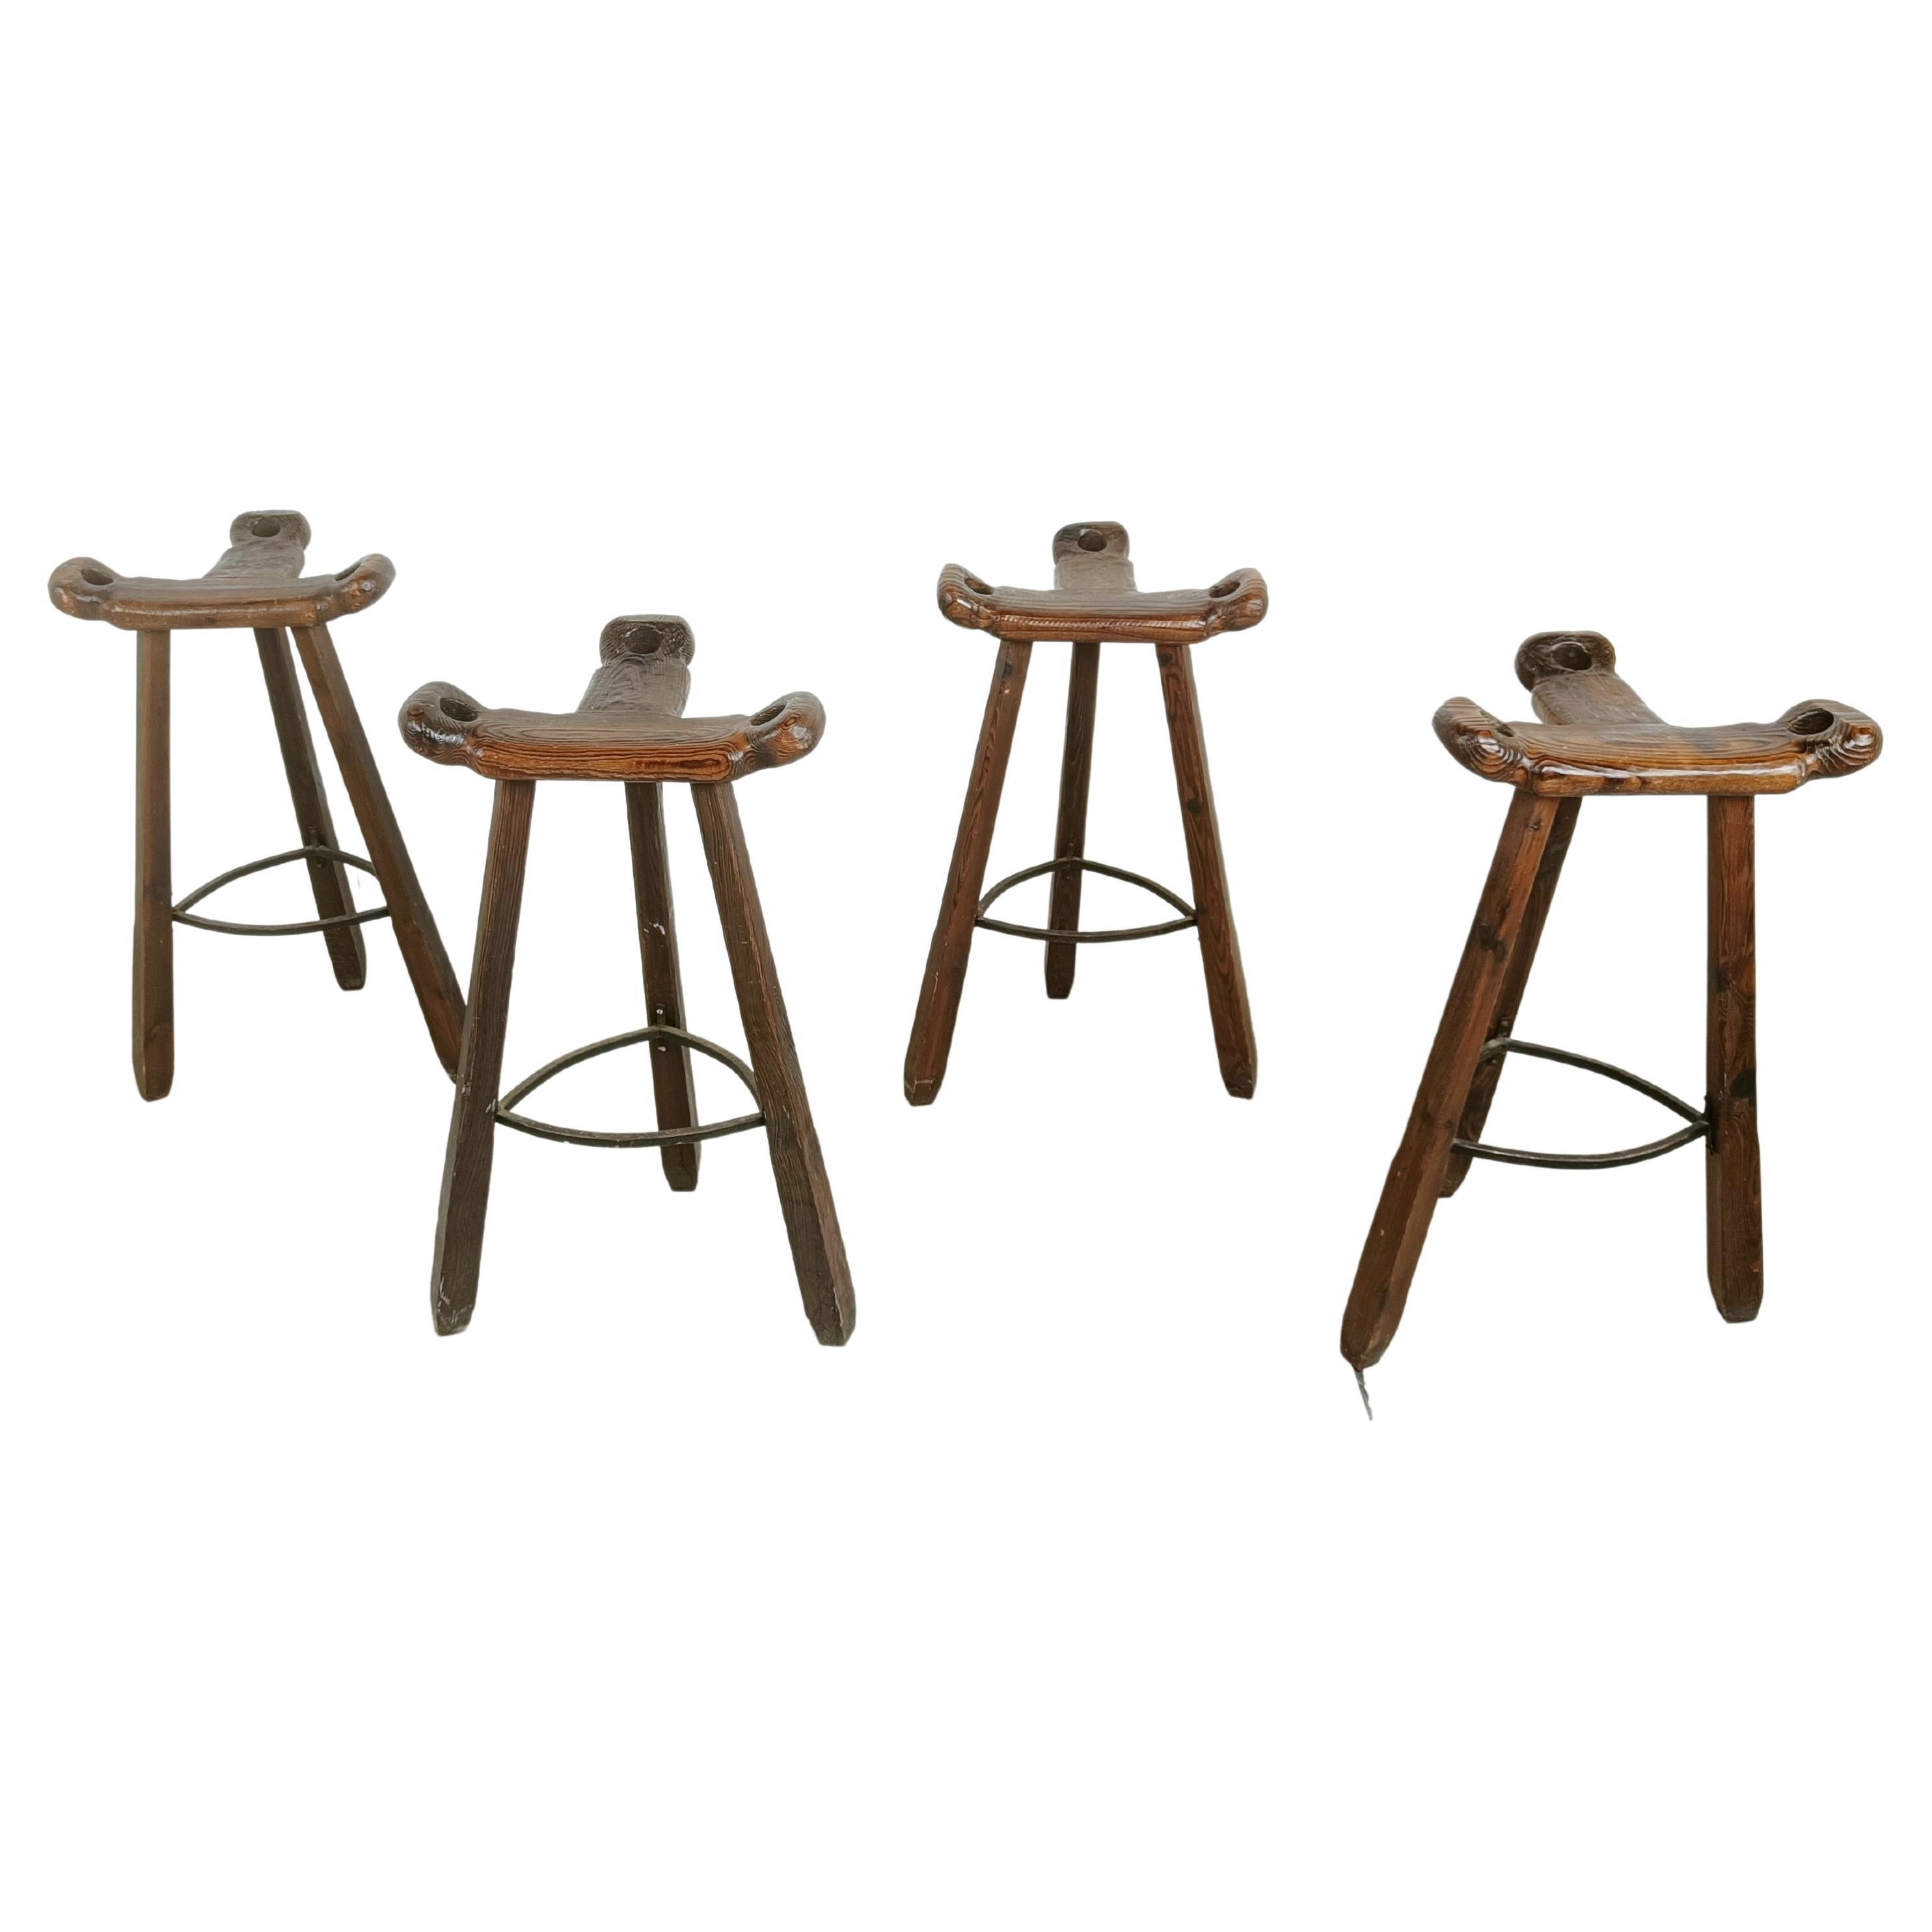 Mid century brutalist bar stools - set of 4, 1960s